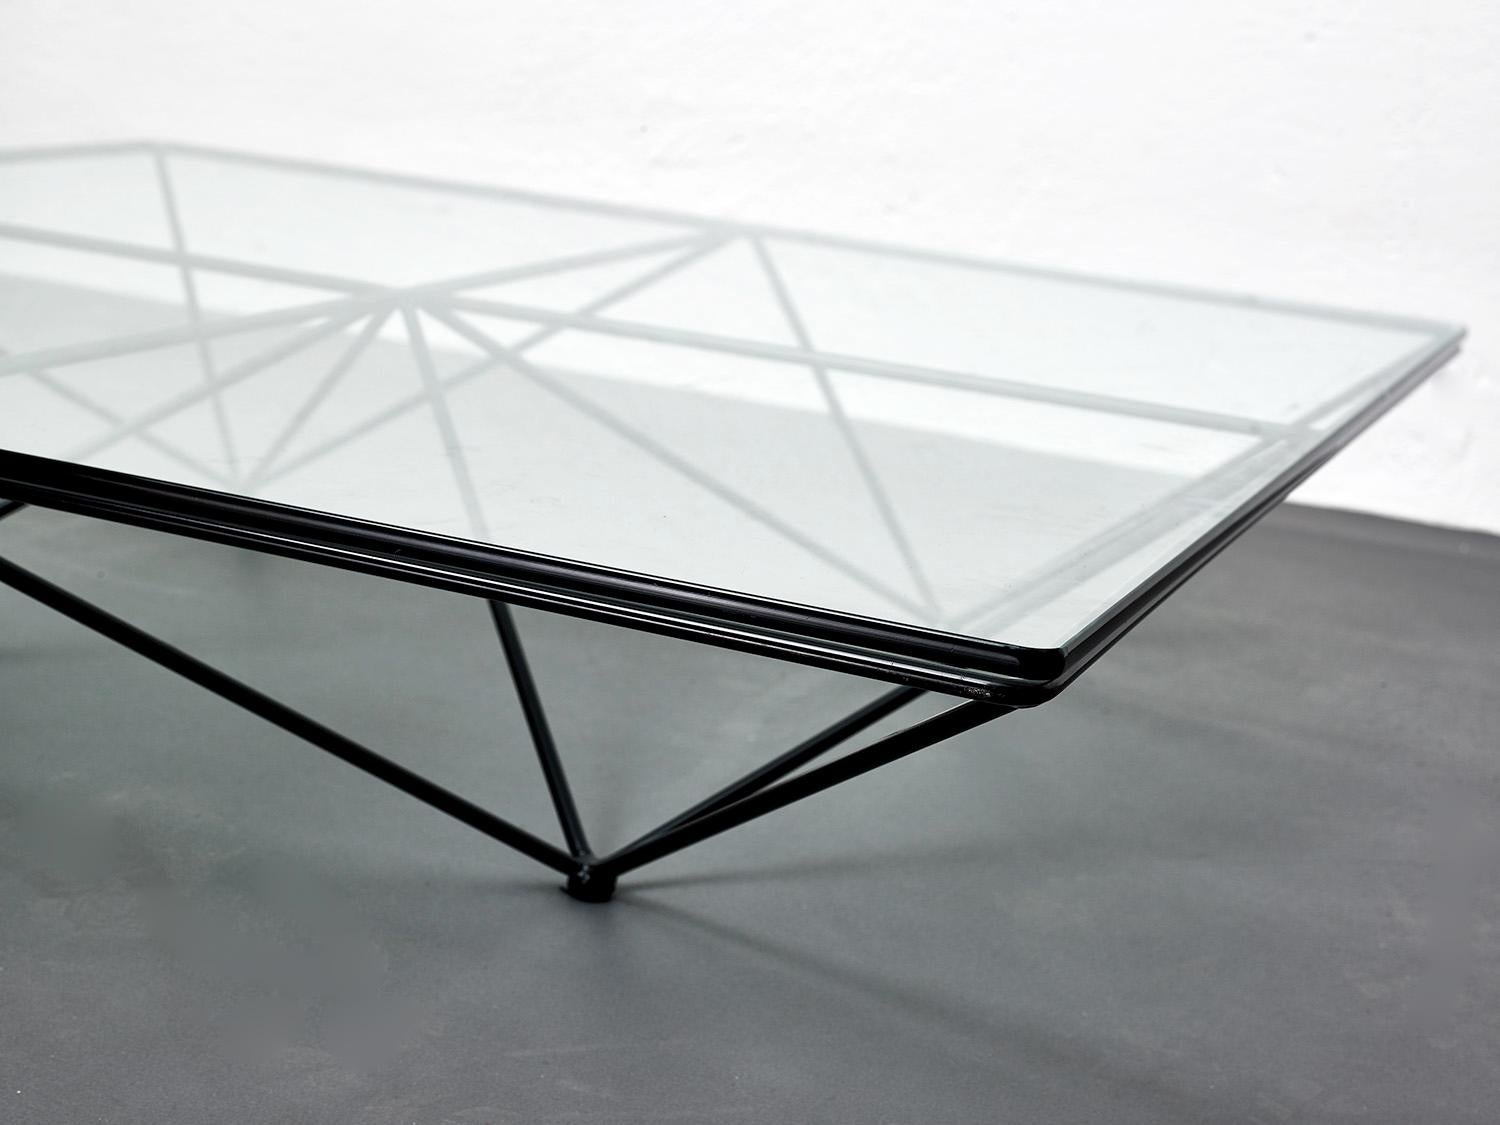 Table basse Alanda de Paolo Piva avec structure carrée en verre et métal

Cette belle table basse minimaliste est composée d'un plateau en verre aux bords arrondis reposant sur une structure métallique au design presque optique.

Il s'agit d'un